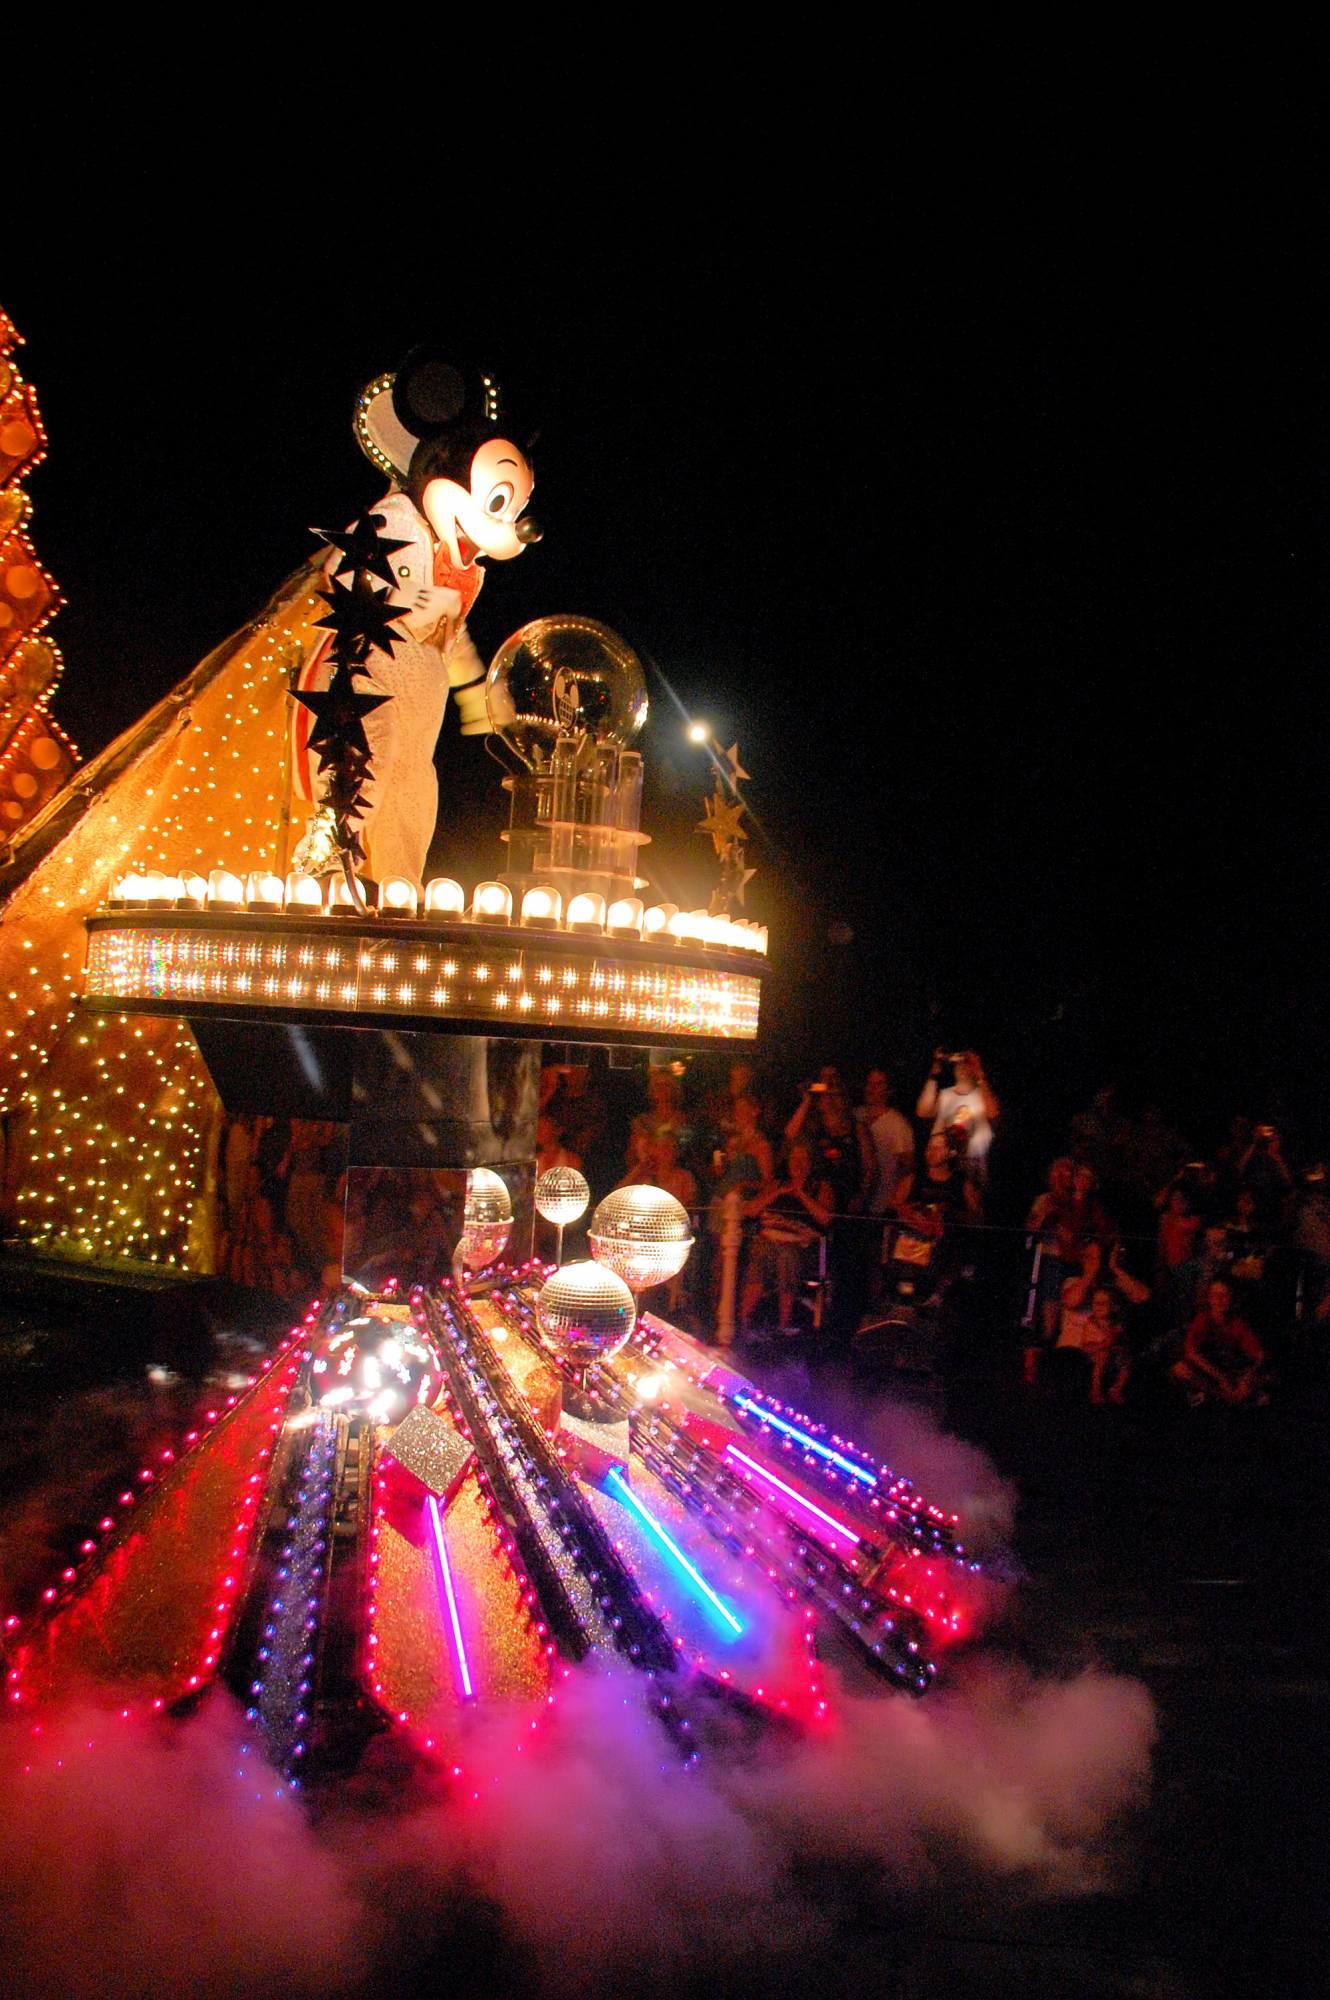 Magic Kingdom SpectroMagic Parade